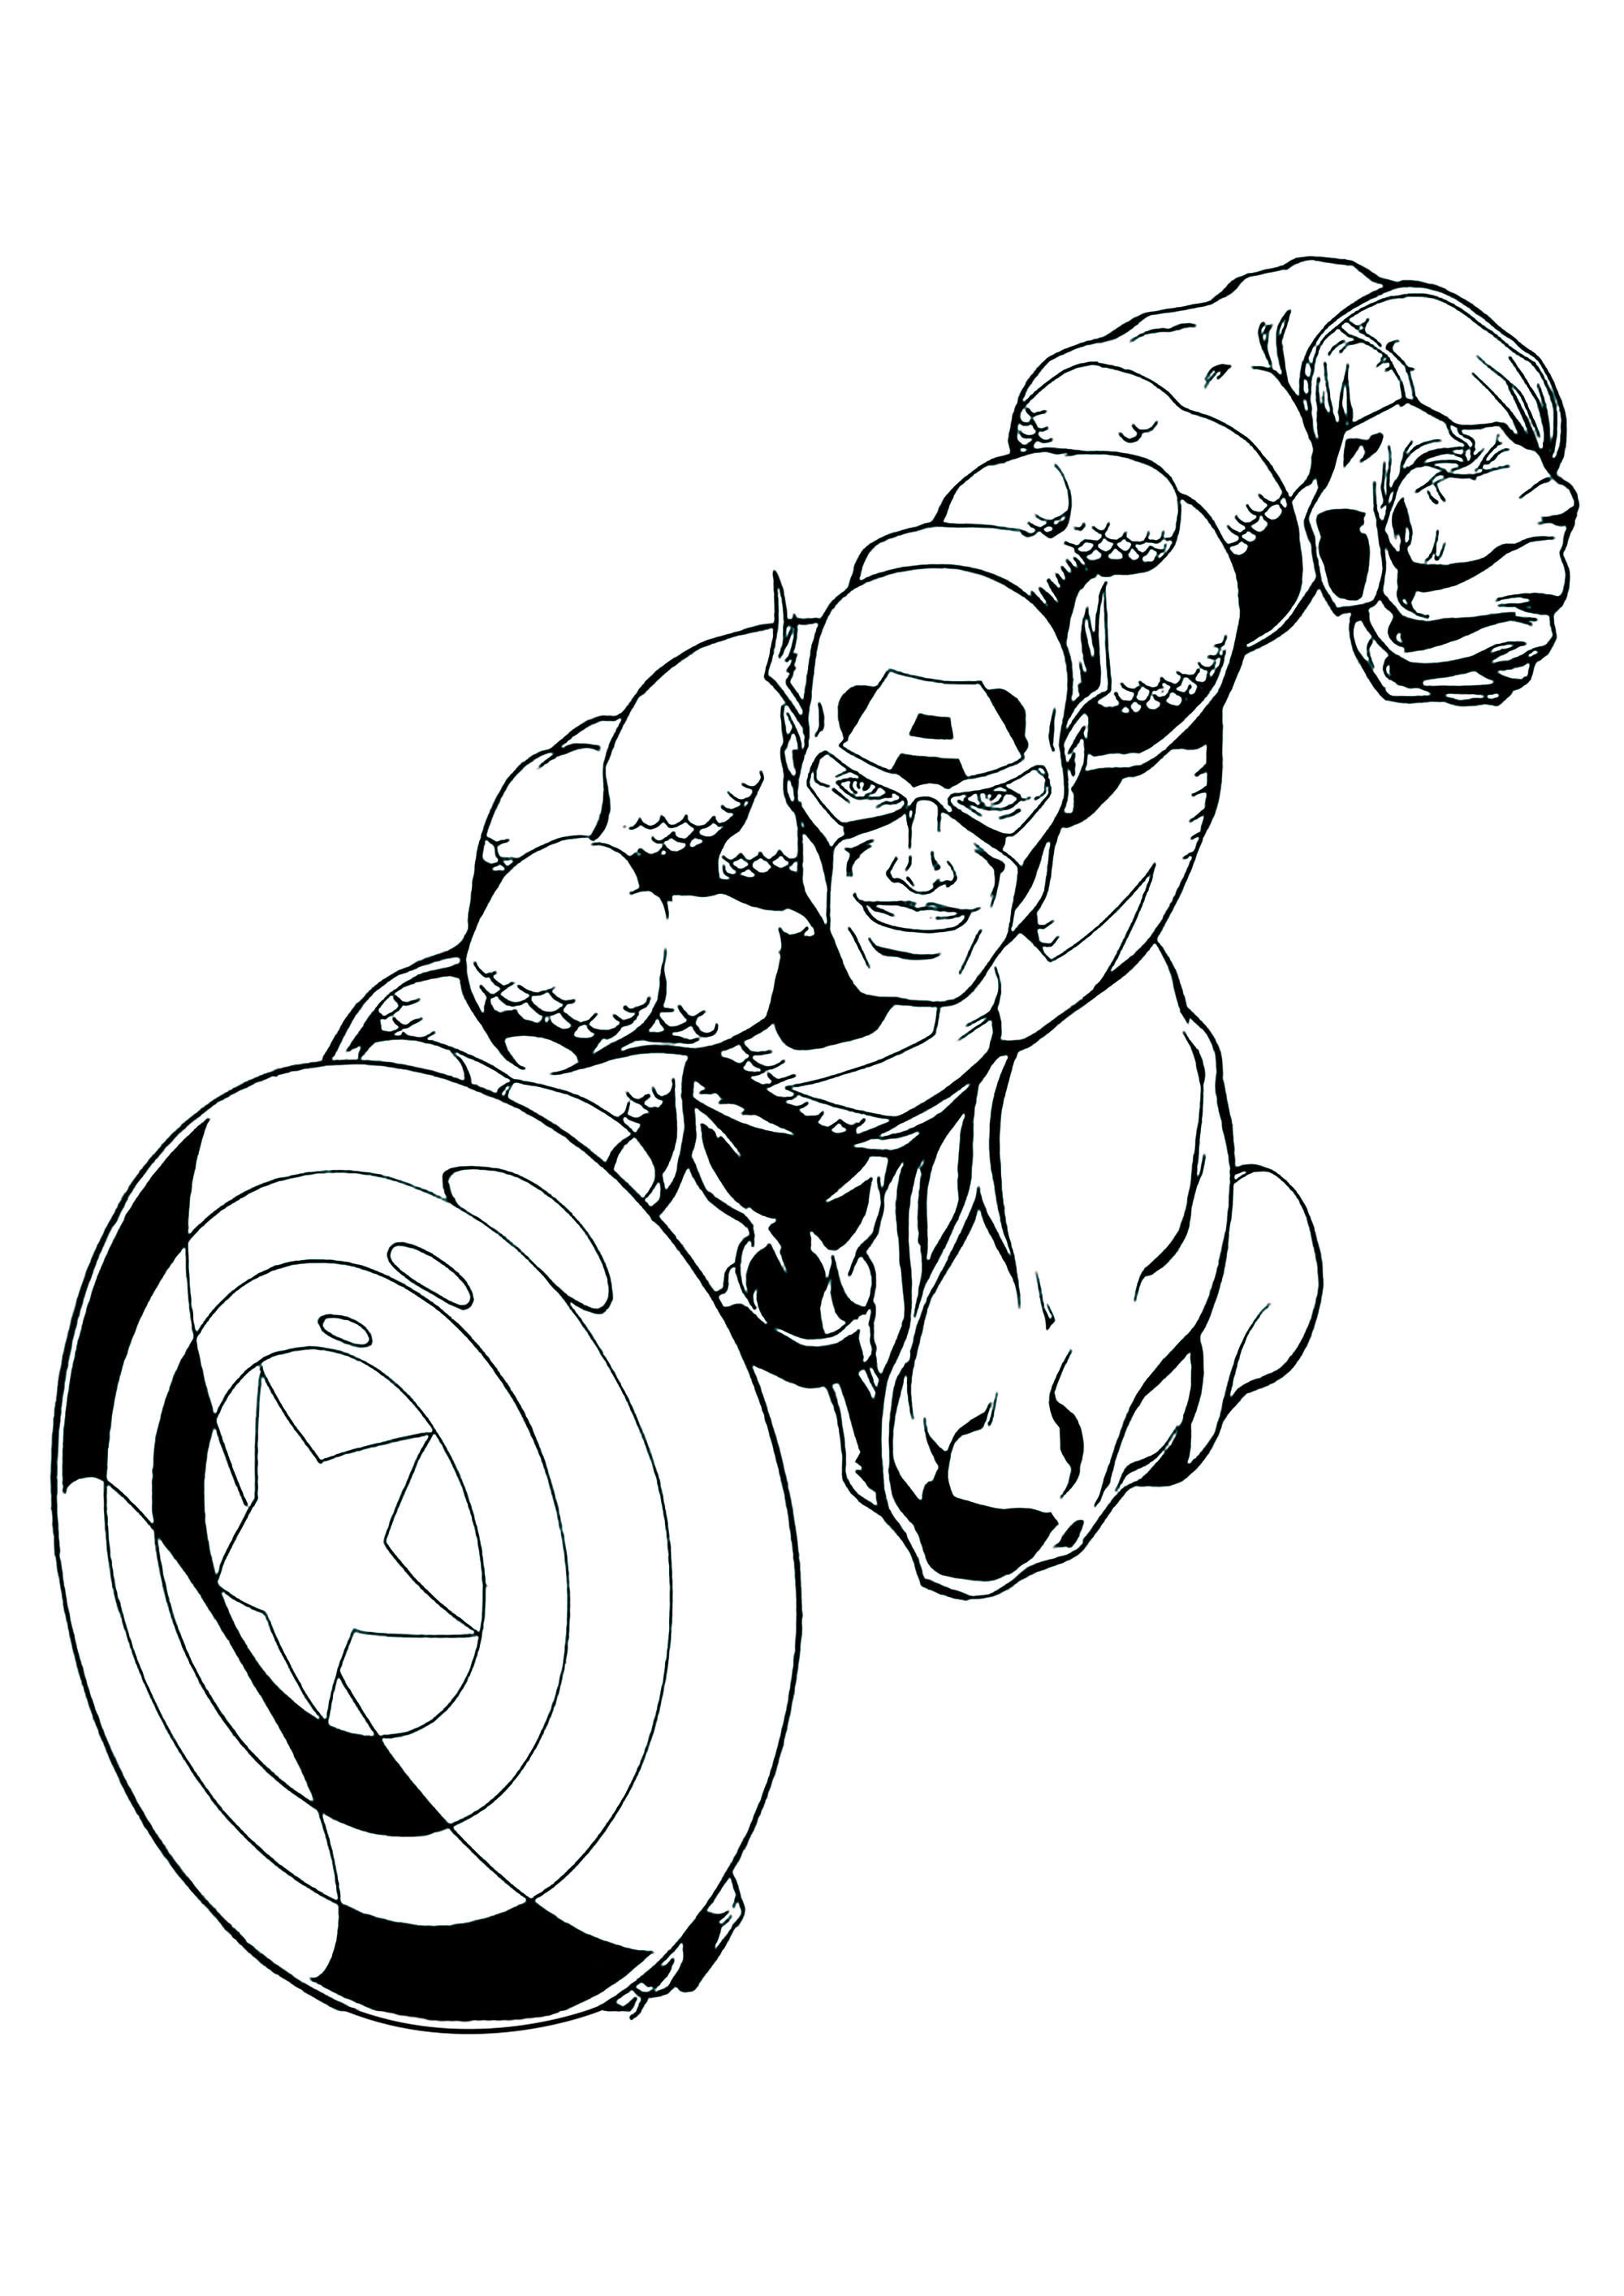 Image de Captain America à colorier, facile pour enfants